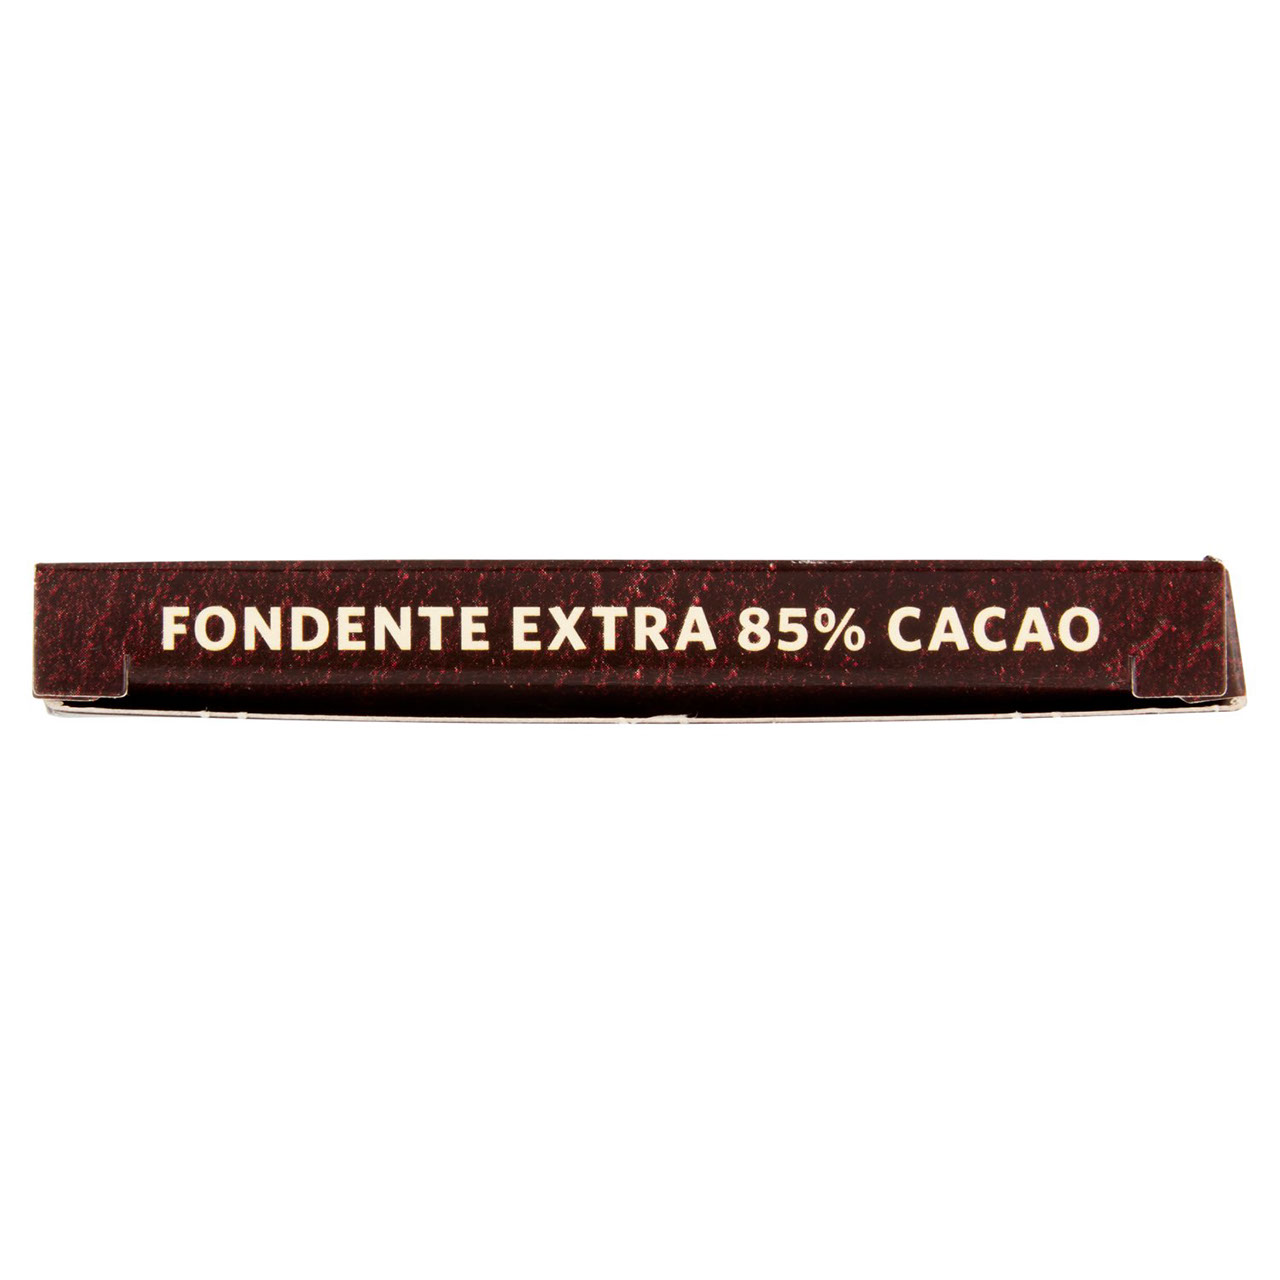 Fondente Extra 85% Cacao 100 g Conad